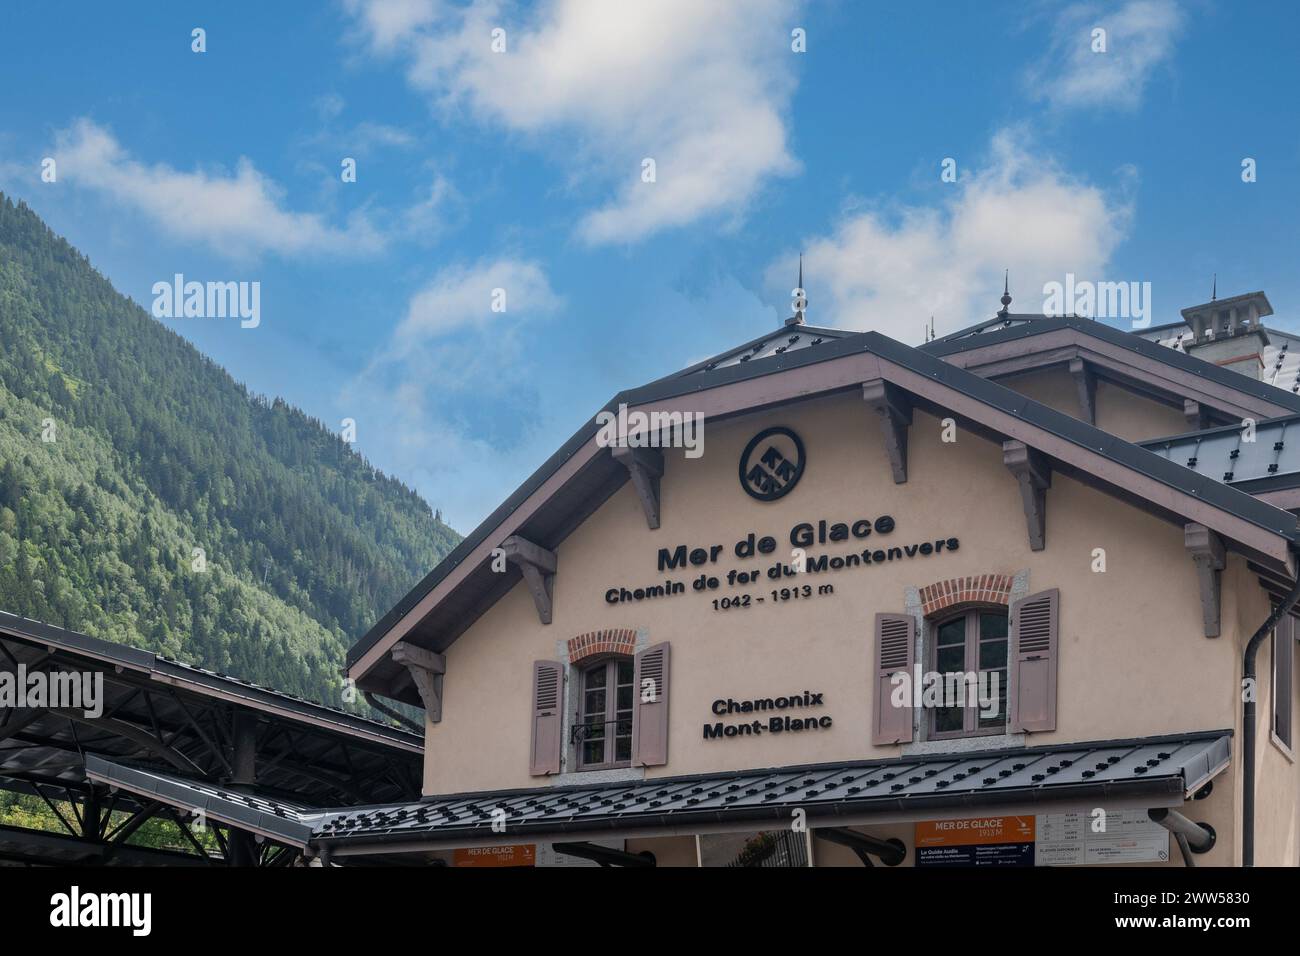 Hoher Abschnitt des Zahnradbahnhofs von Montenvers für Mer de Glace, Chamonix, Haute Savoie, Auvergne Rhone Alpes, Frankreich Stockfoto